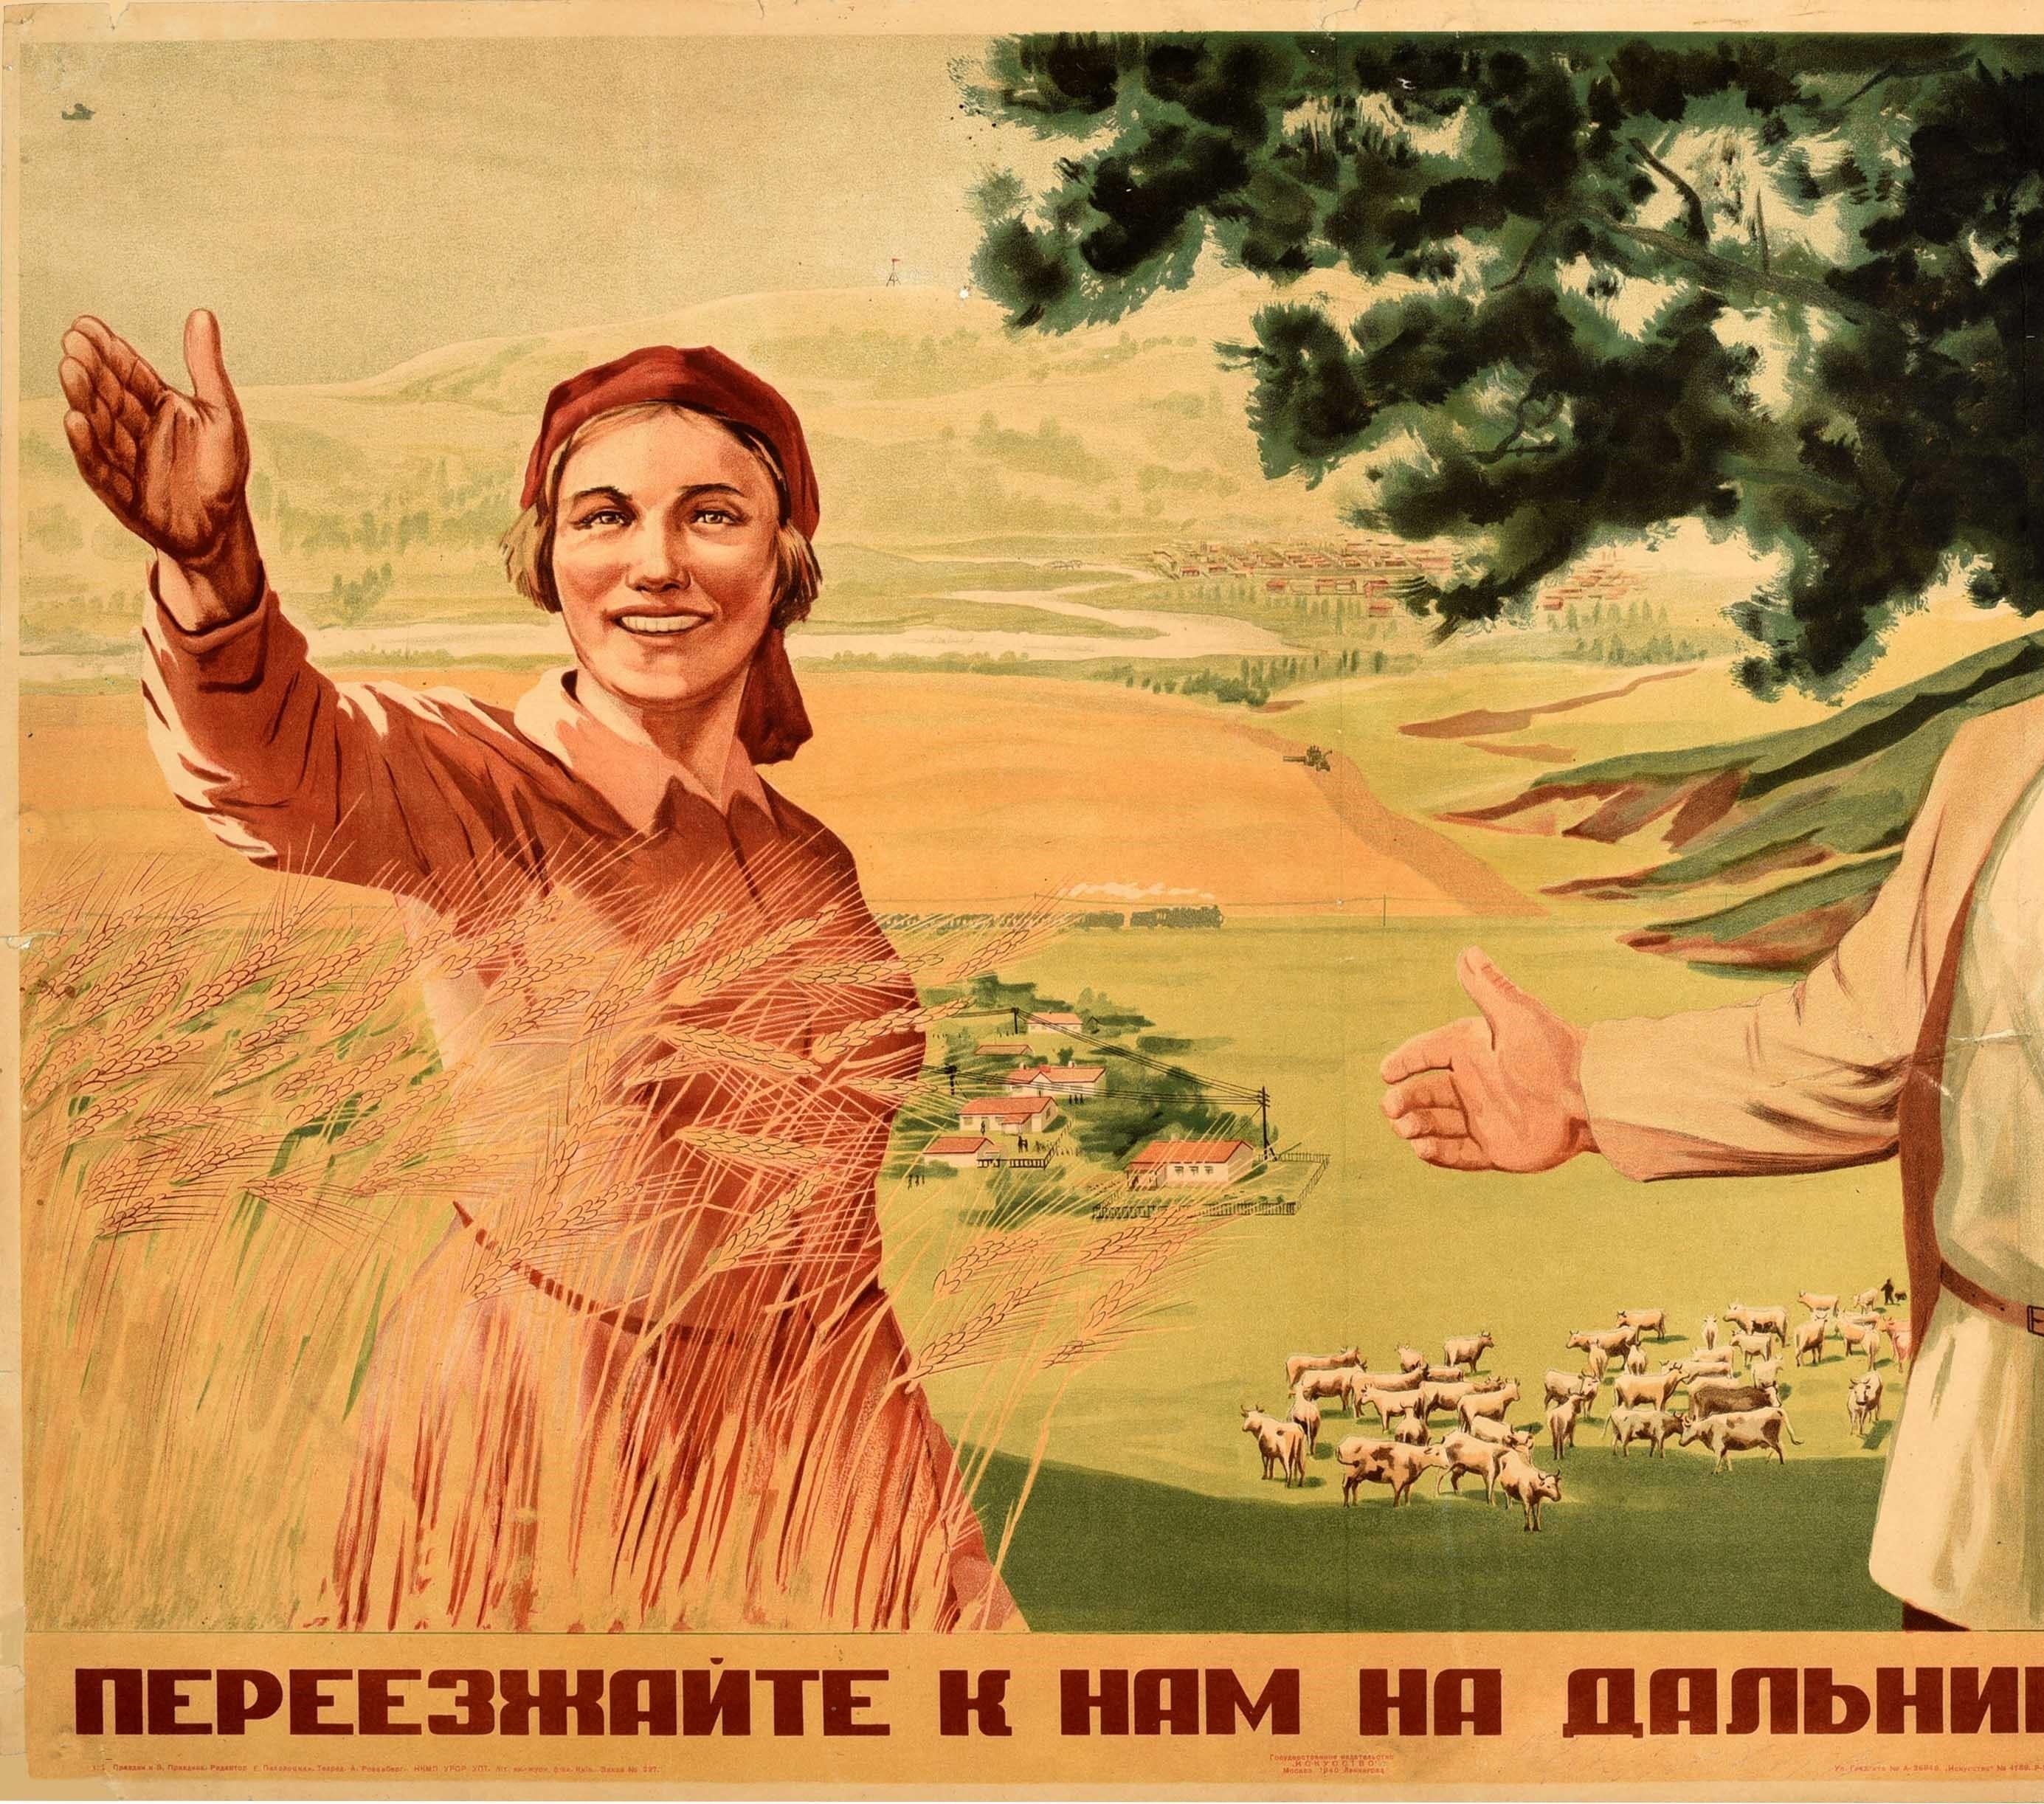 Affiche rétro originale soviétique « Move To The Far East With Us Cattle Crop Farming » (Nous déplaçons en Extrême-Orient avec nos élevages de bétail) - Print de Unknown